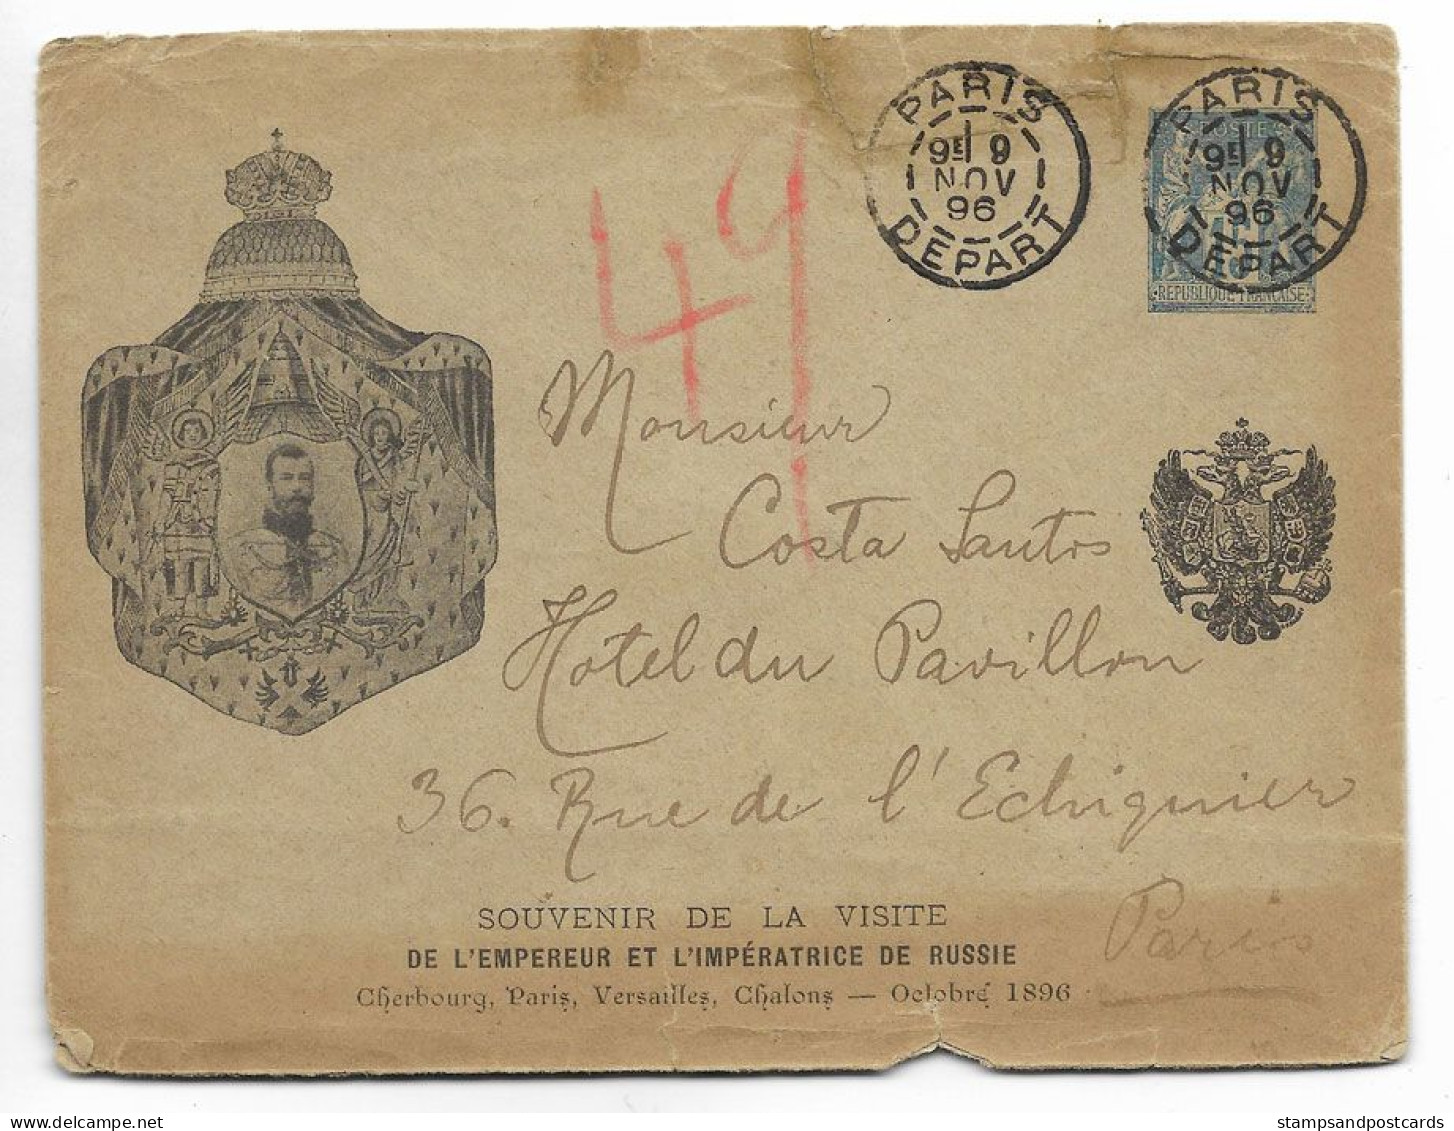 France Souvenir Visite Empereur Russie 1896 Rare Carte Entier Repiqué Voyagé Russia Czar Visit France Stationery Cover - Cartoline-lettere